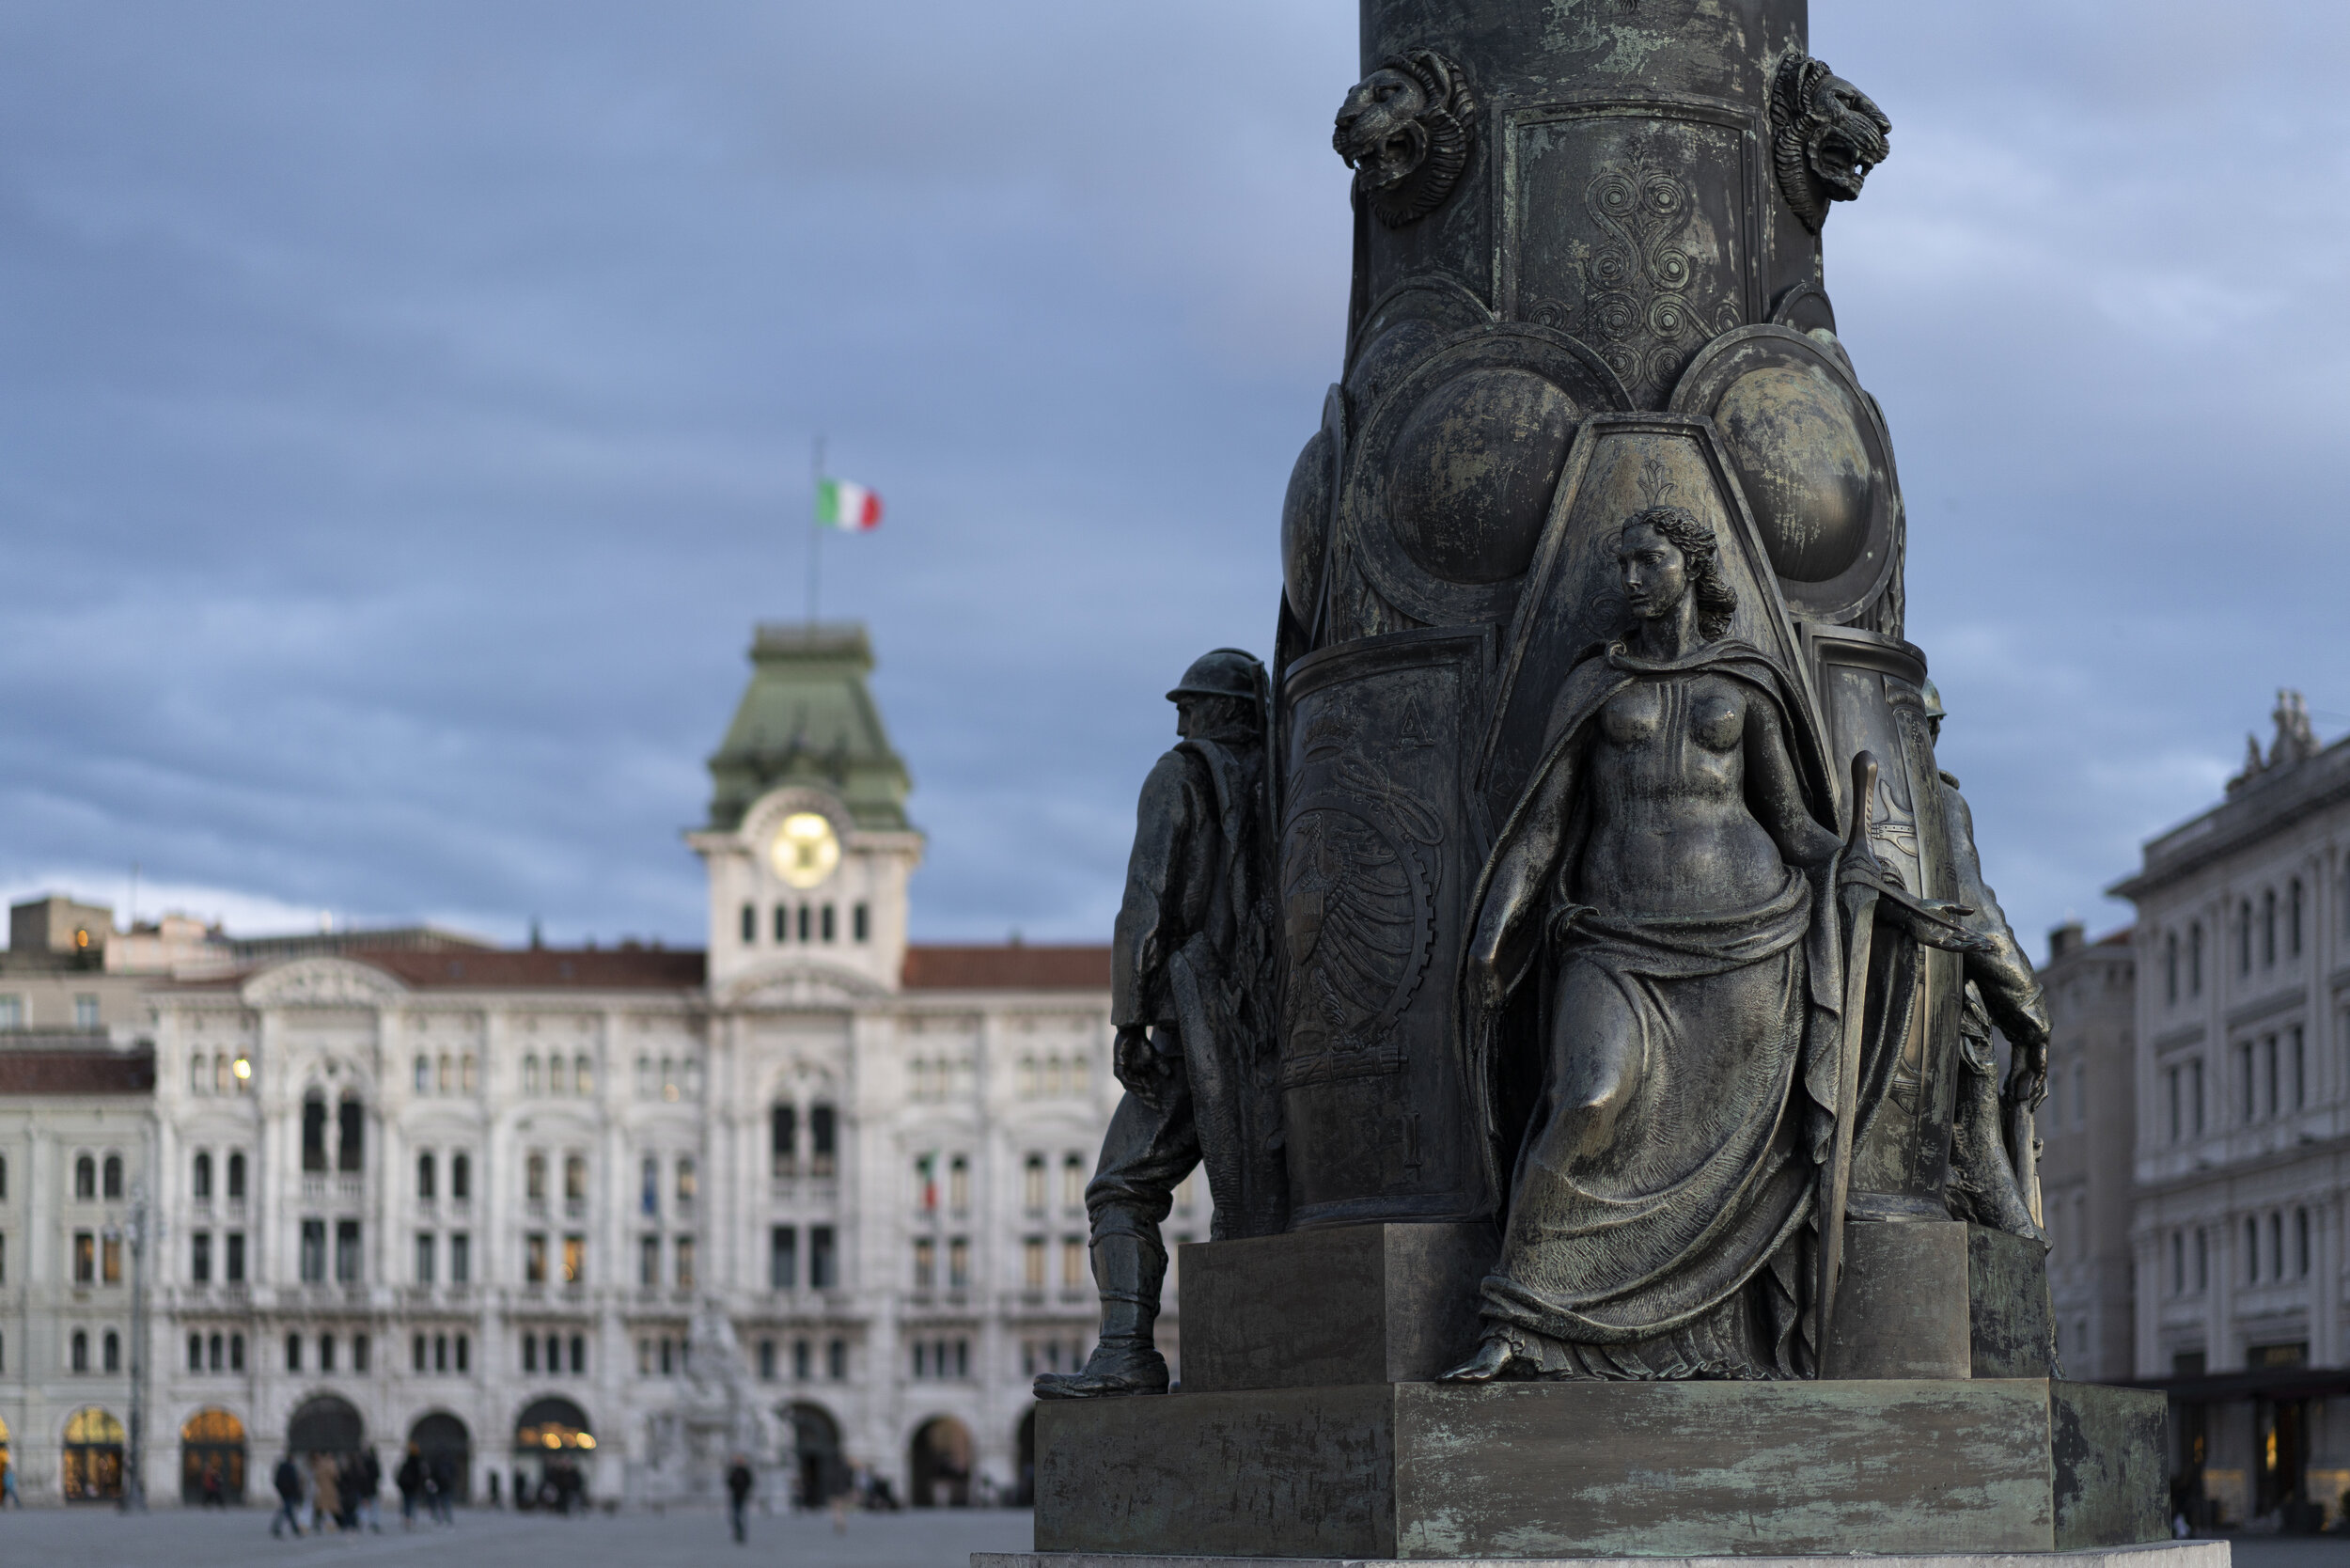 Piazza dell'Unita', Trieste